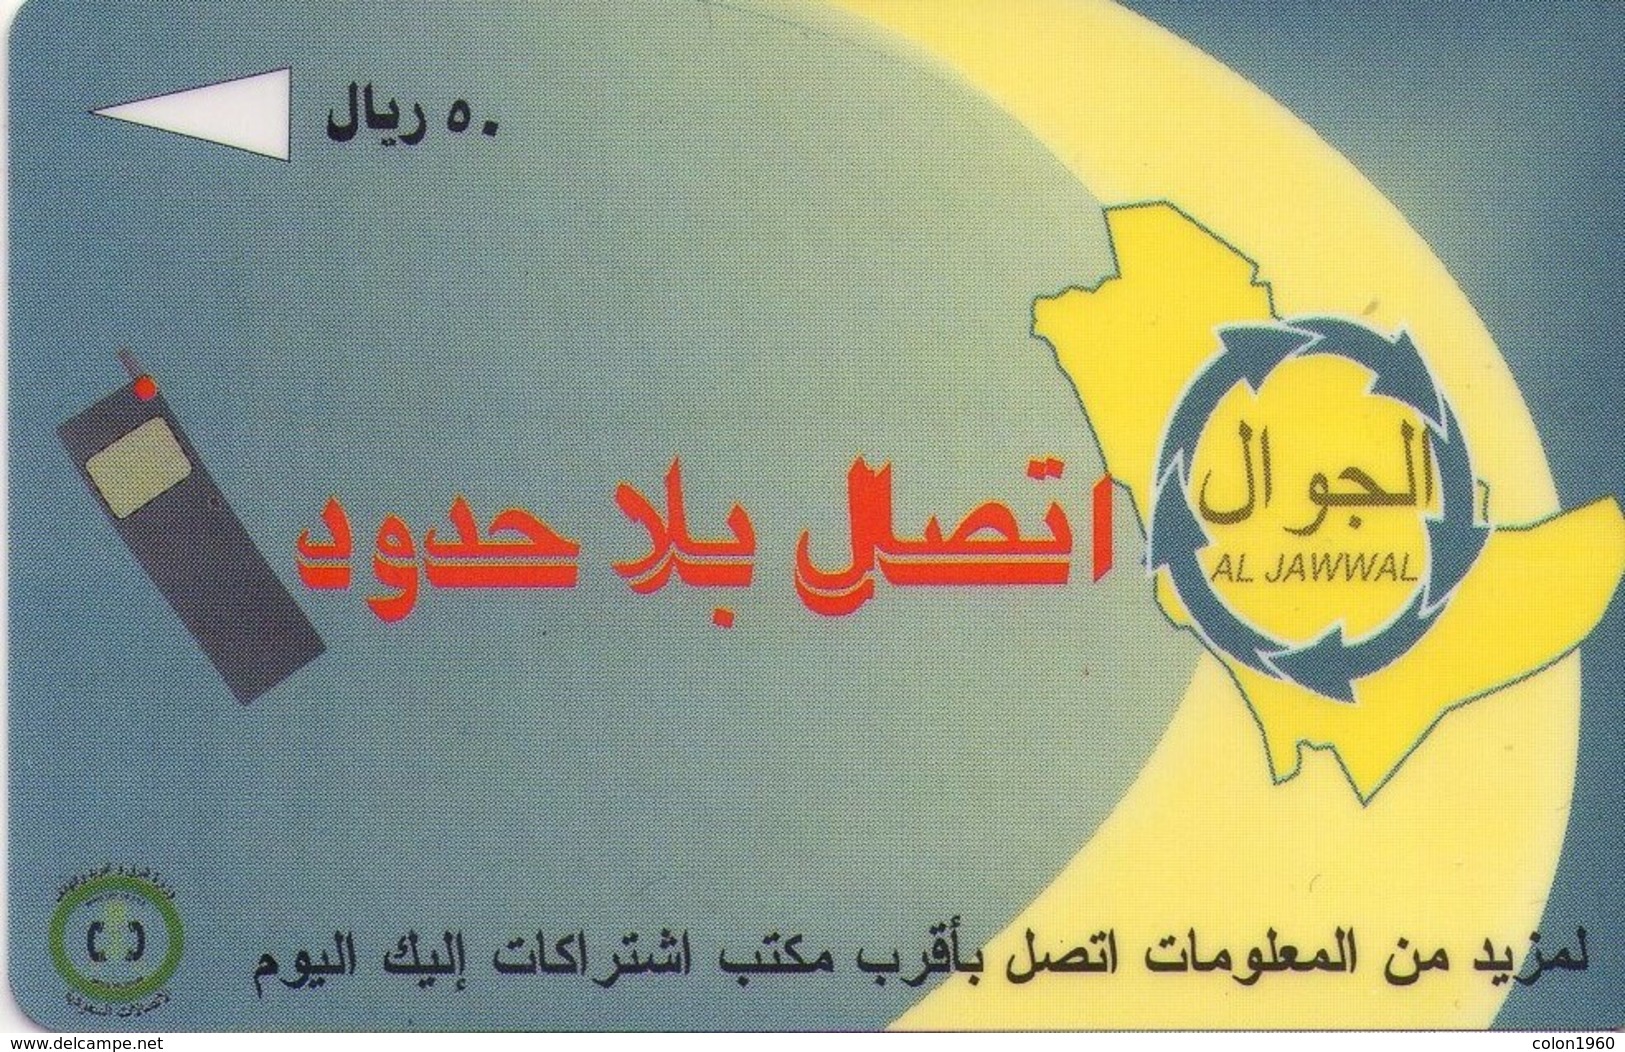 ARABIA SAUDITA. Al Jawwal Mobile Phones. 1996-01. SA-STC-0014 (SAUDF). (006) - Arabie Saoudite